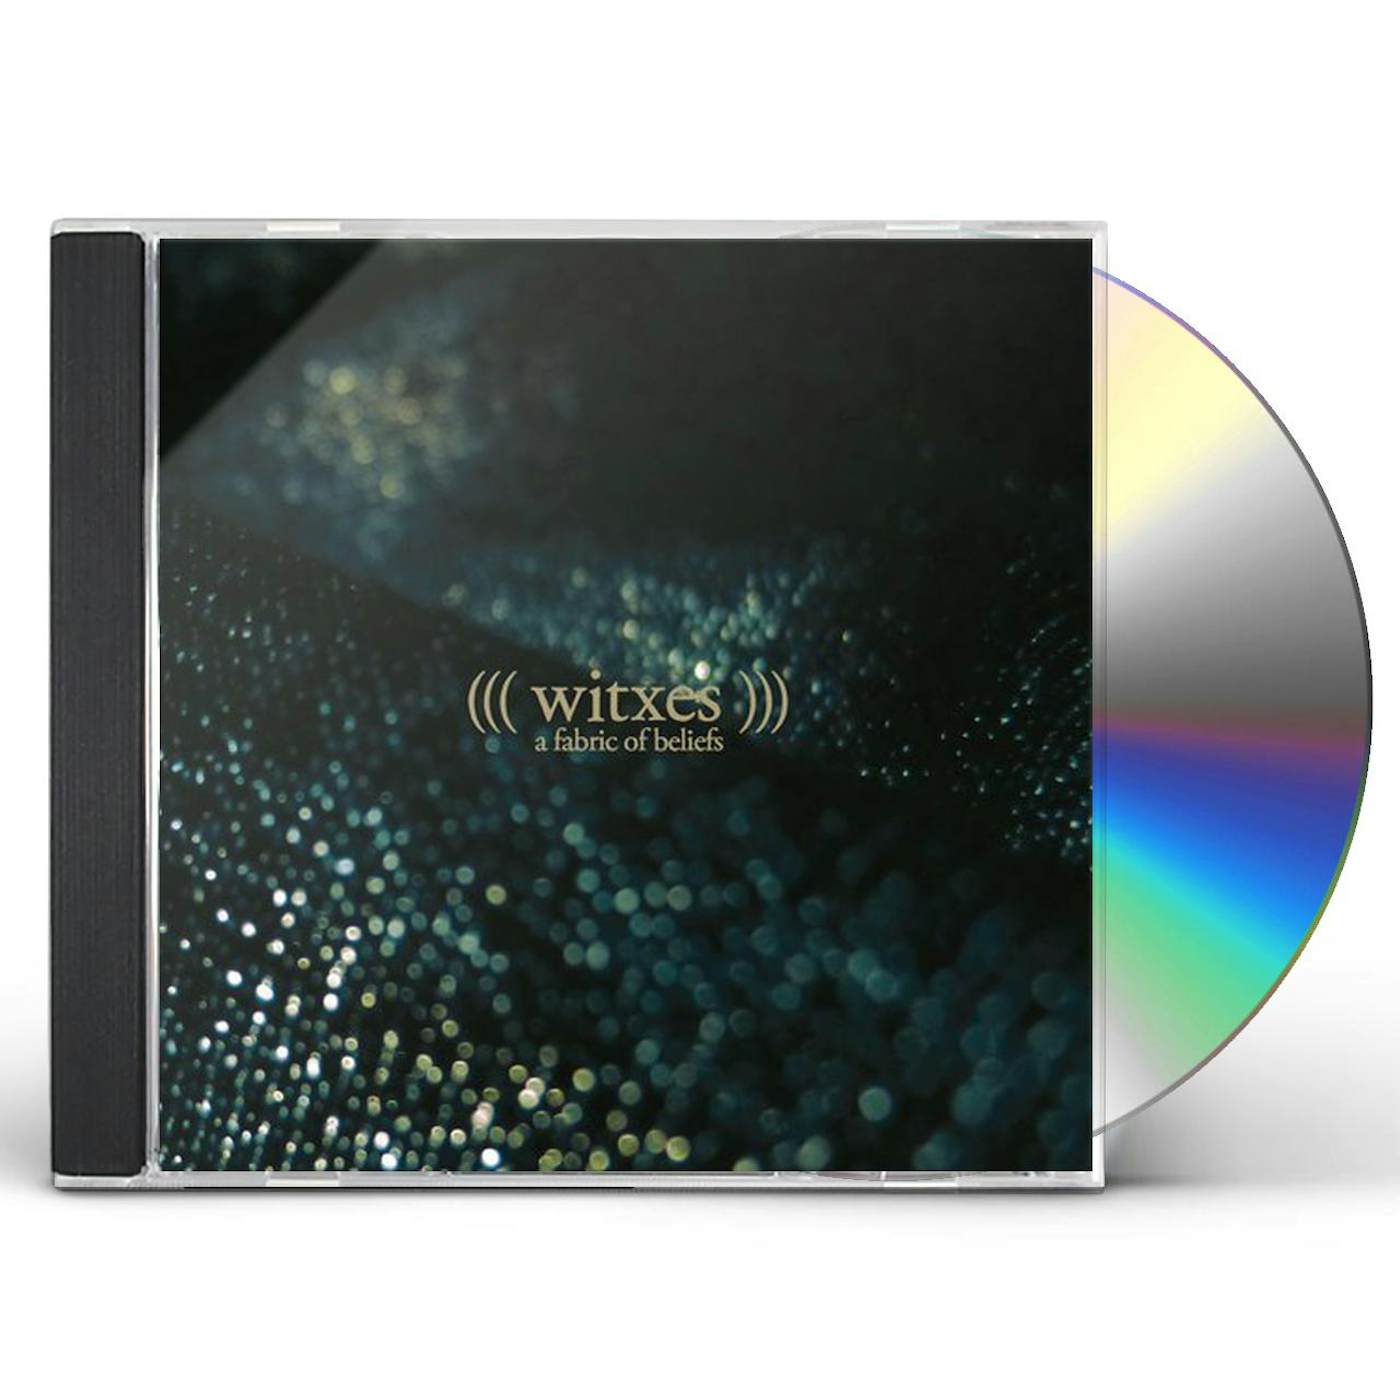 Witxes FABRIC OF BELIEFS CD